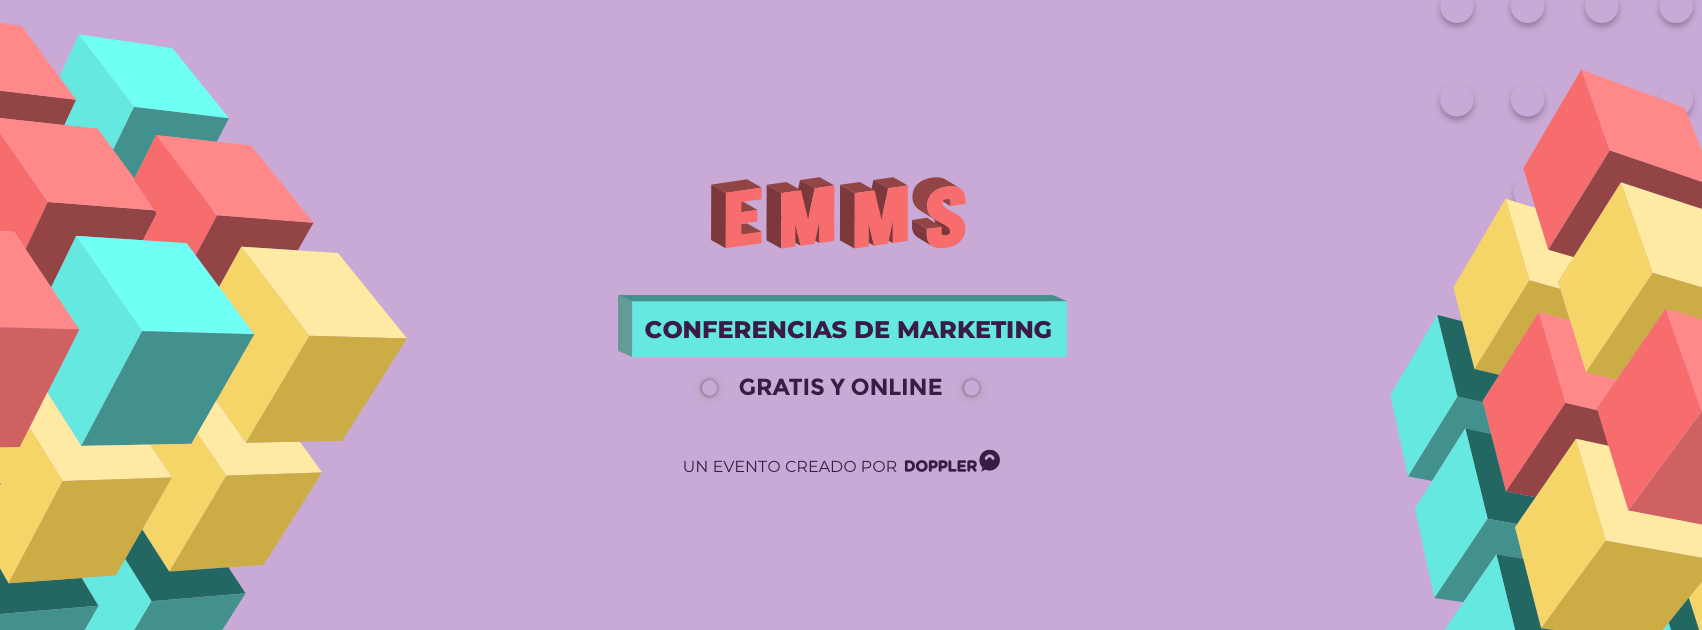 EMMS 2019: El evento online y gratuito de Marketing